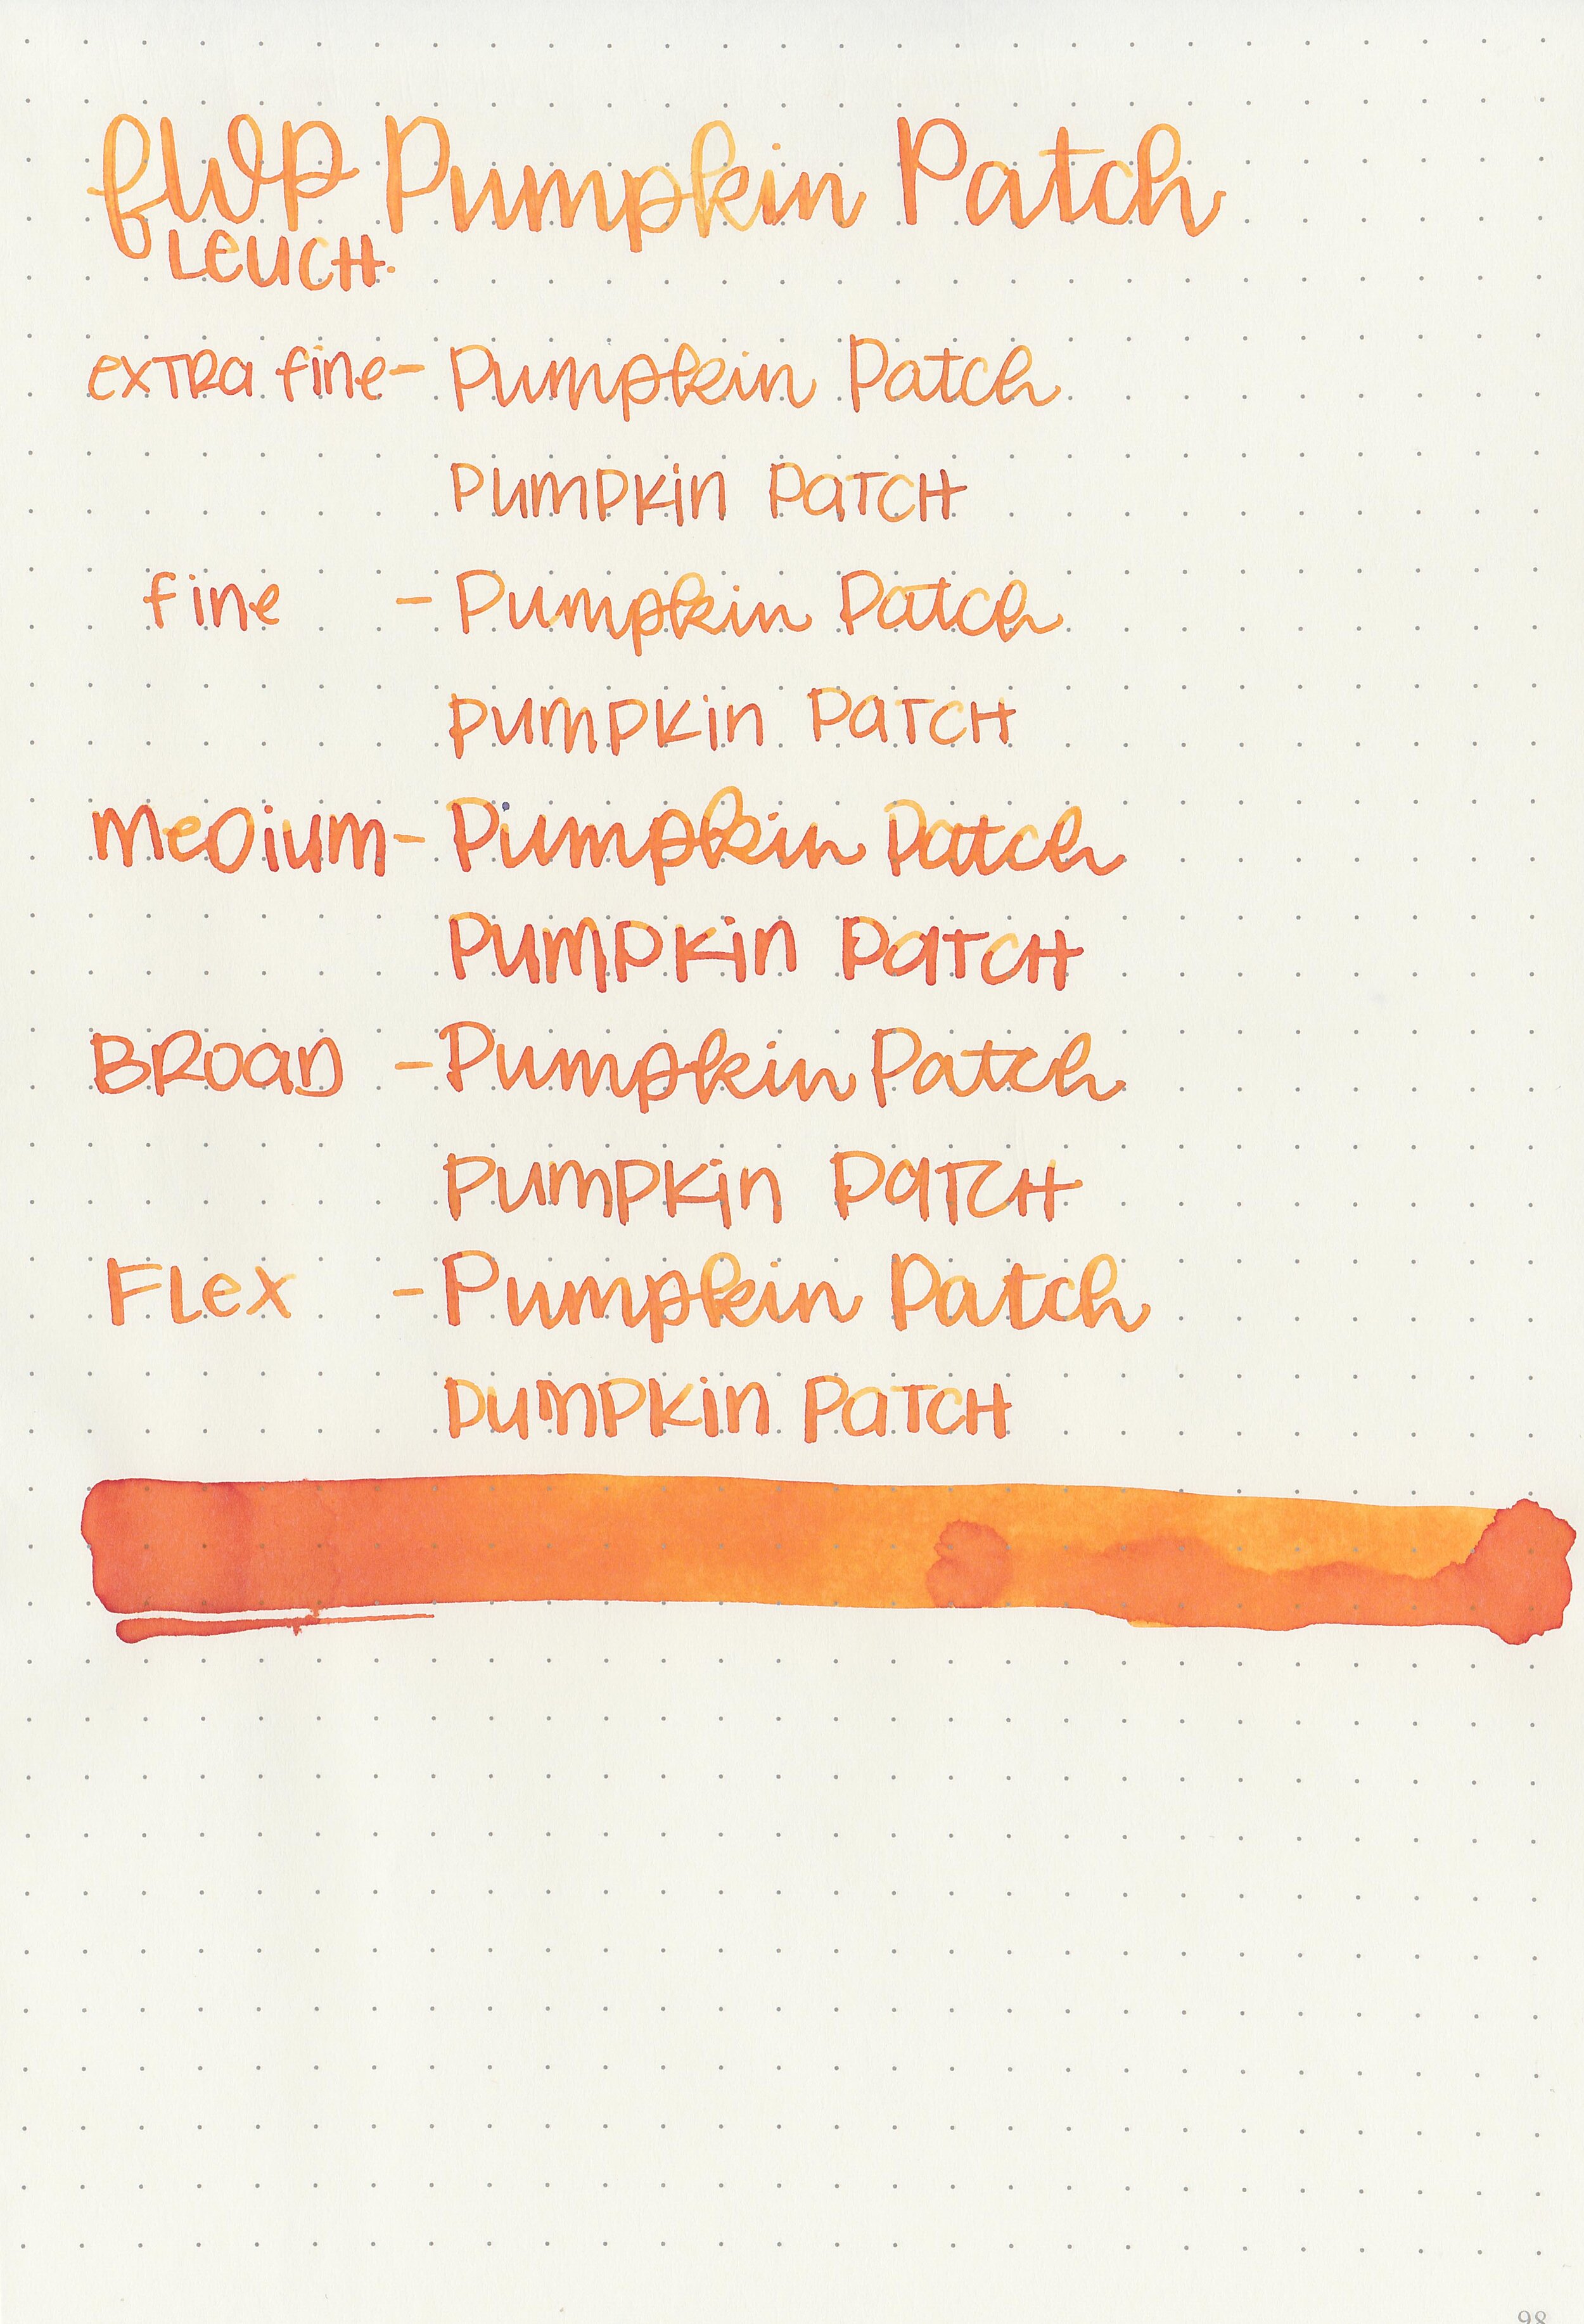 fwp-pumpkin-patch-9.jpg